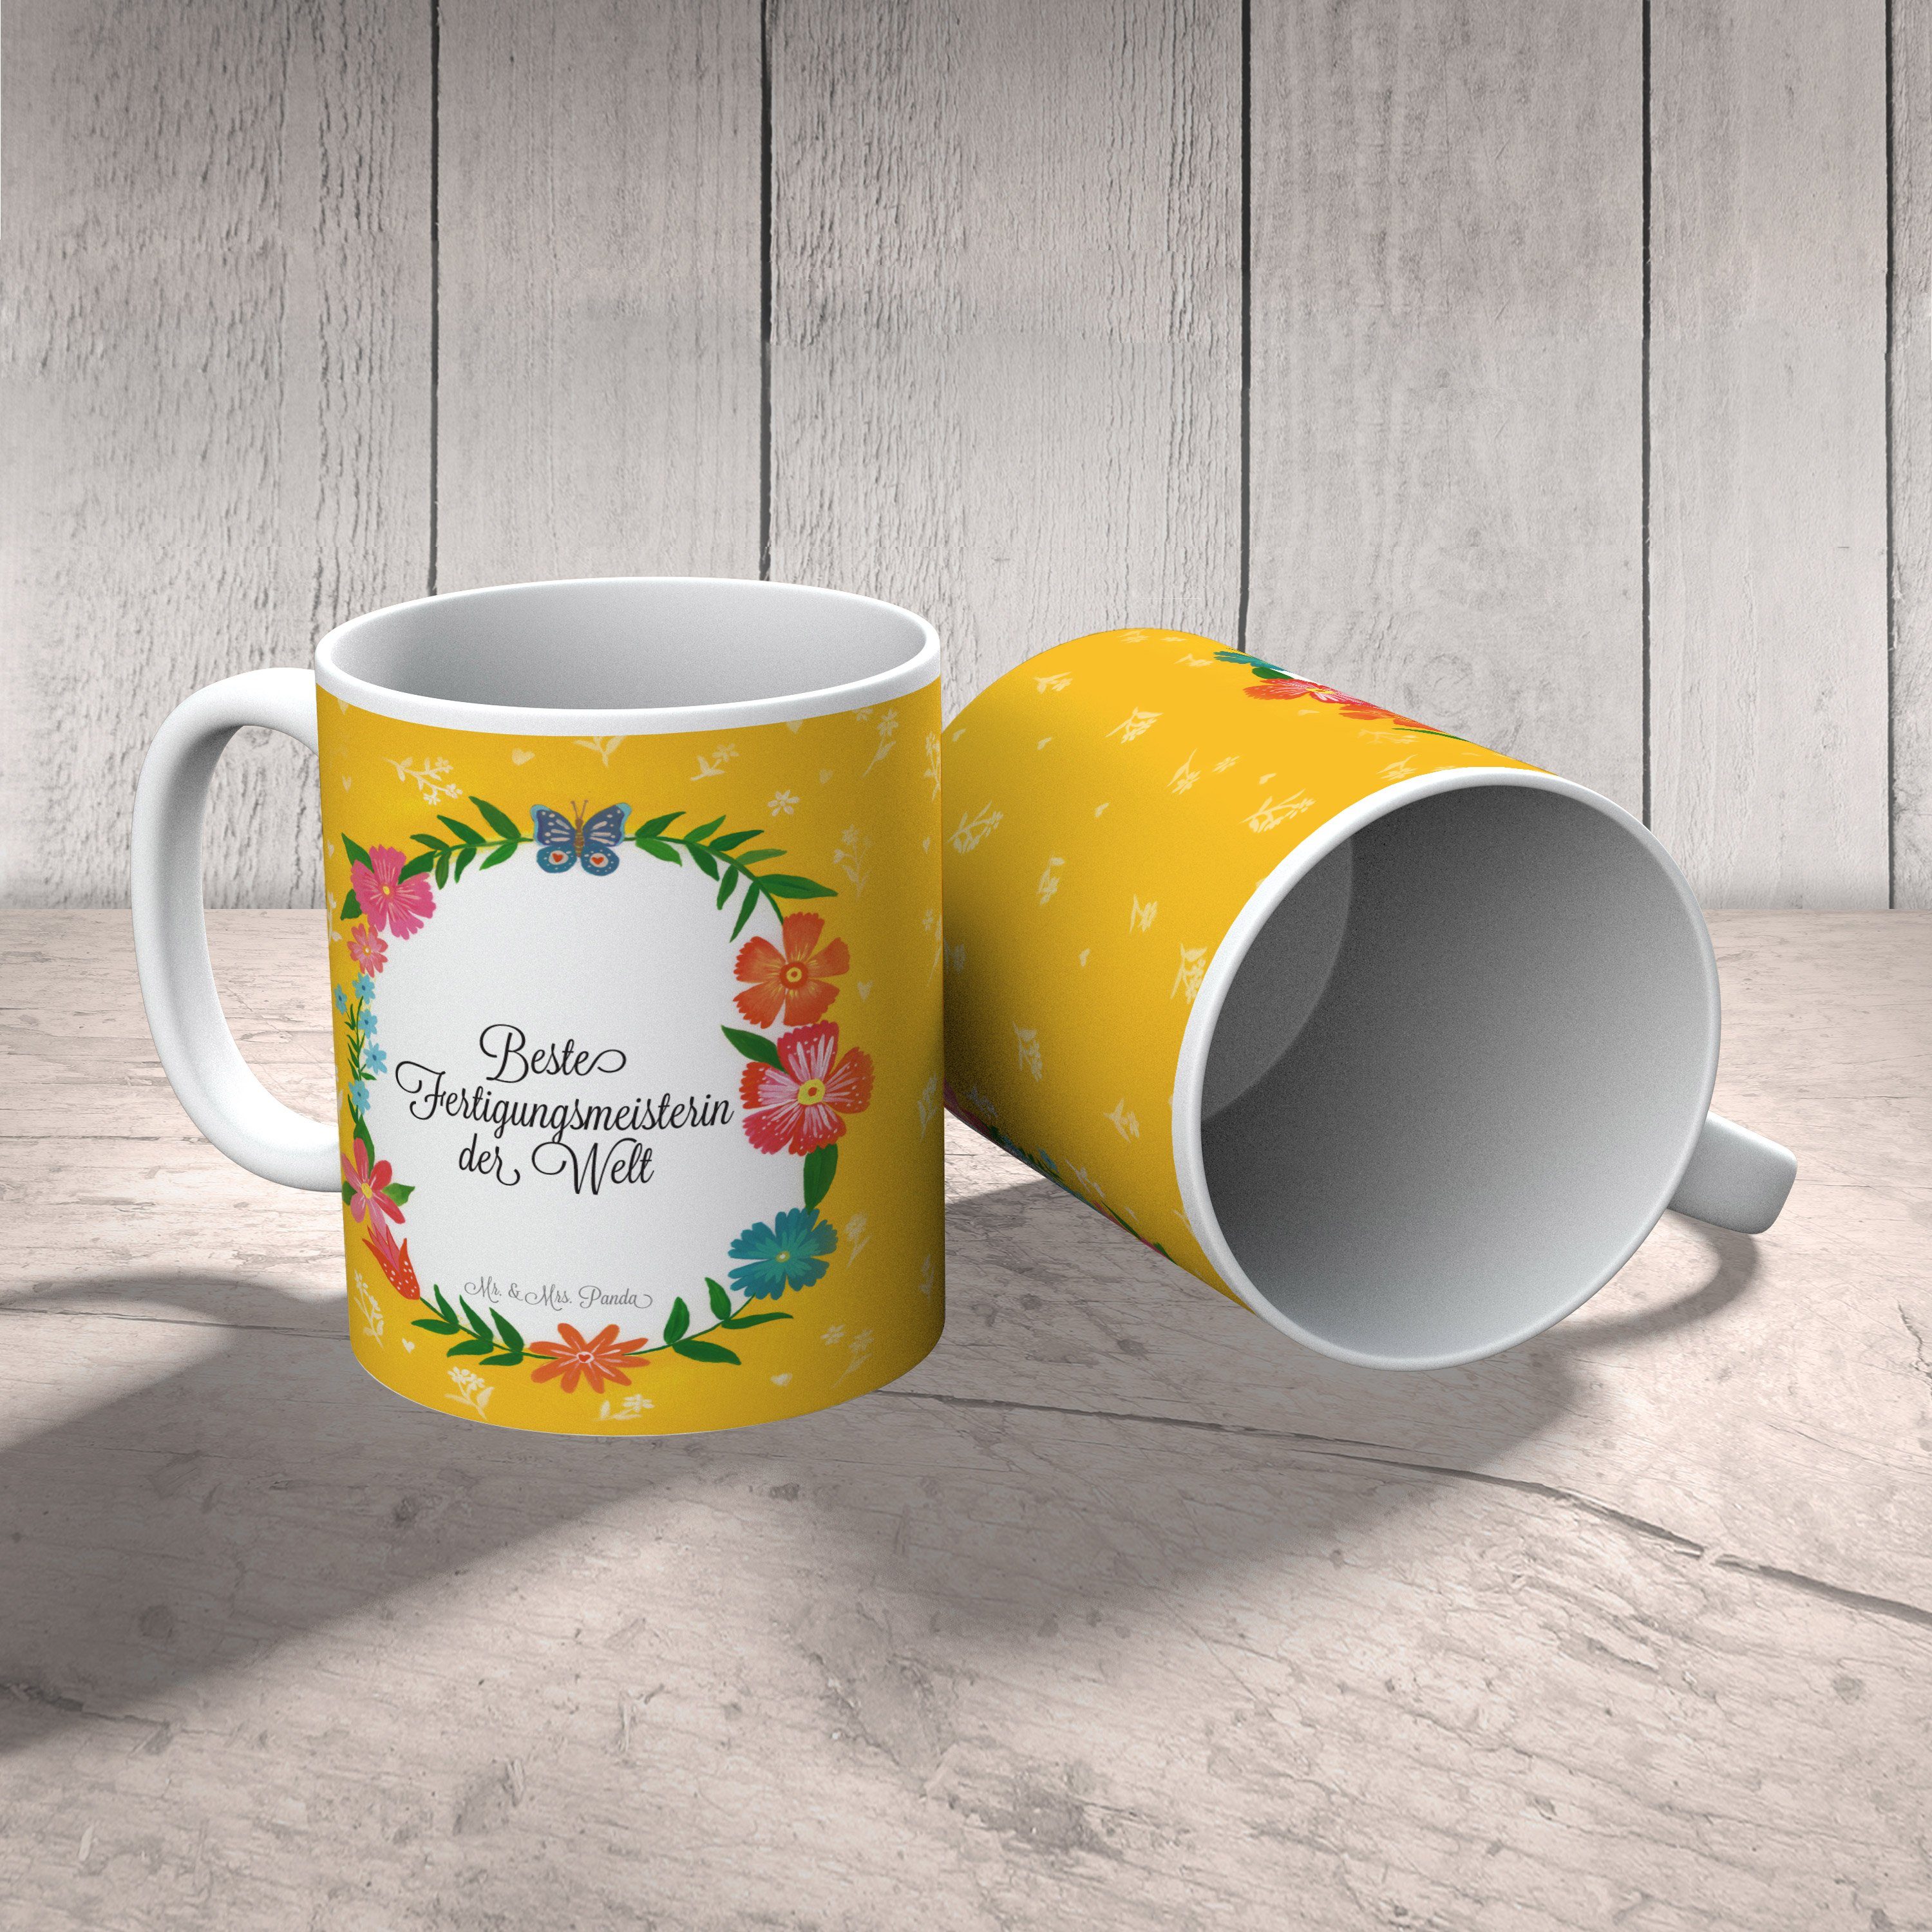 Mr. & Mrs. Panda Tasse, Geschenk Keramik Geschenk, Abschied, Kaffeebeche, - Tasse Fertigungsmeisterin